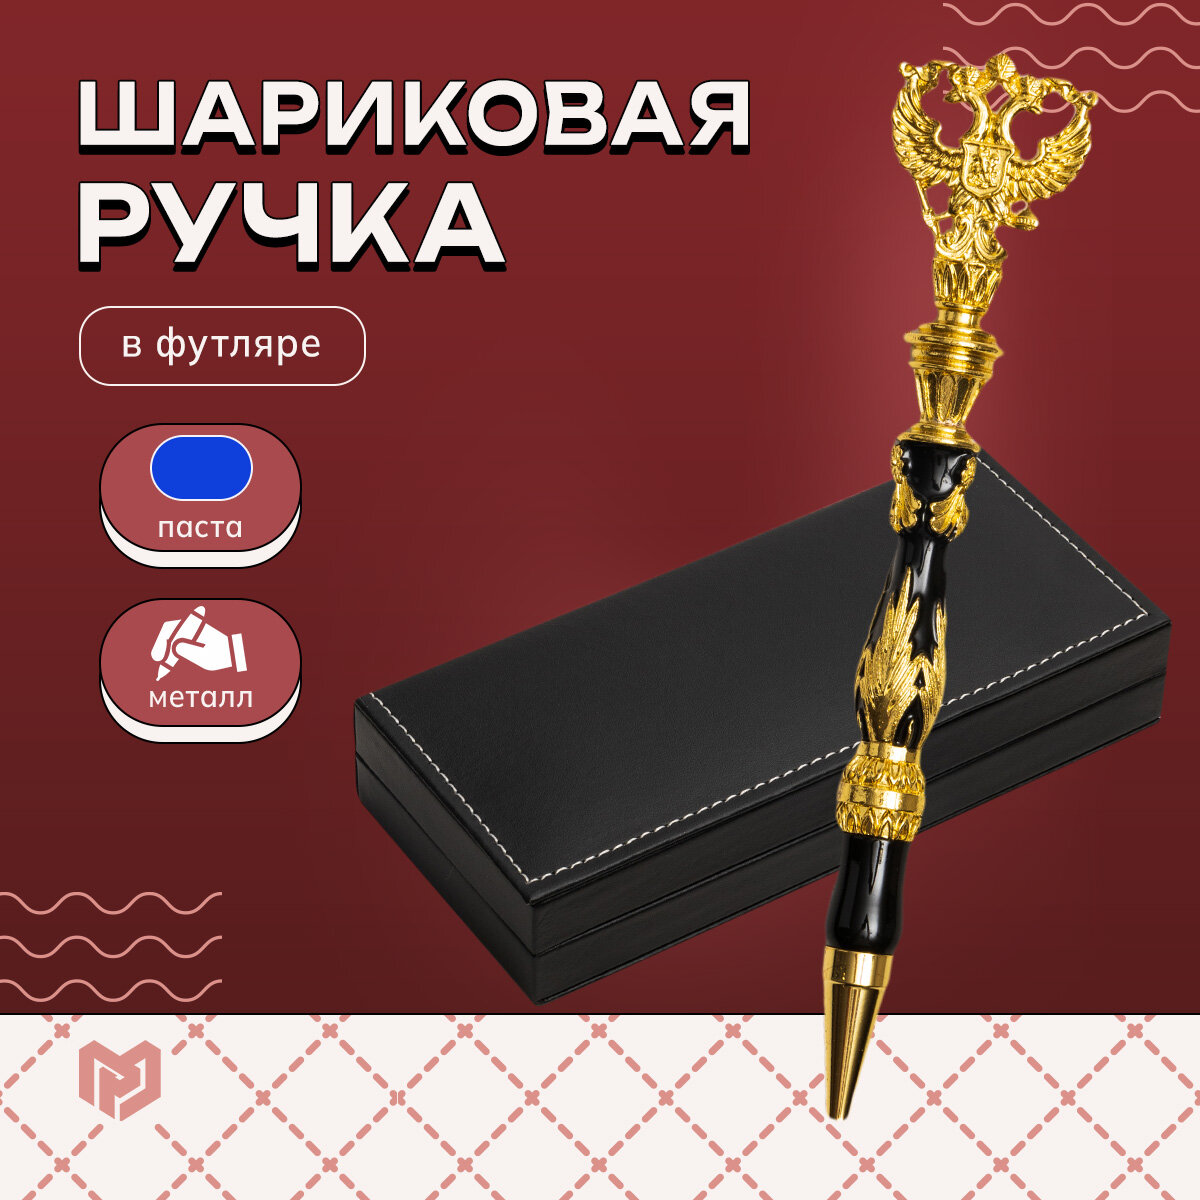 Ручка металл с гербом цвет черный